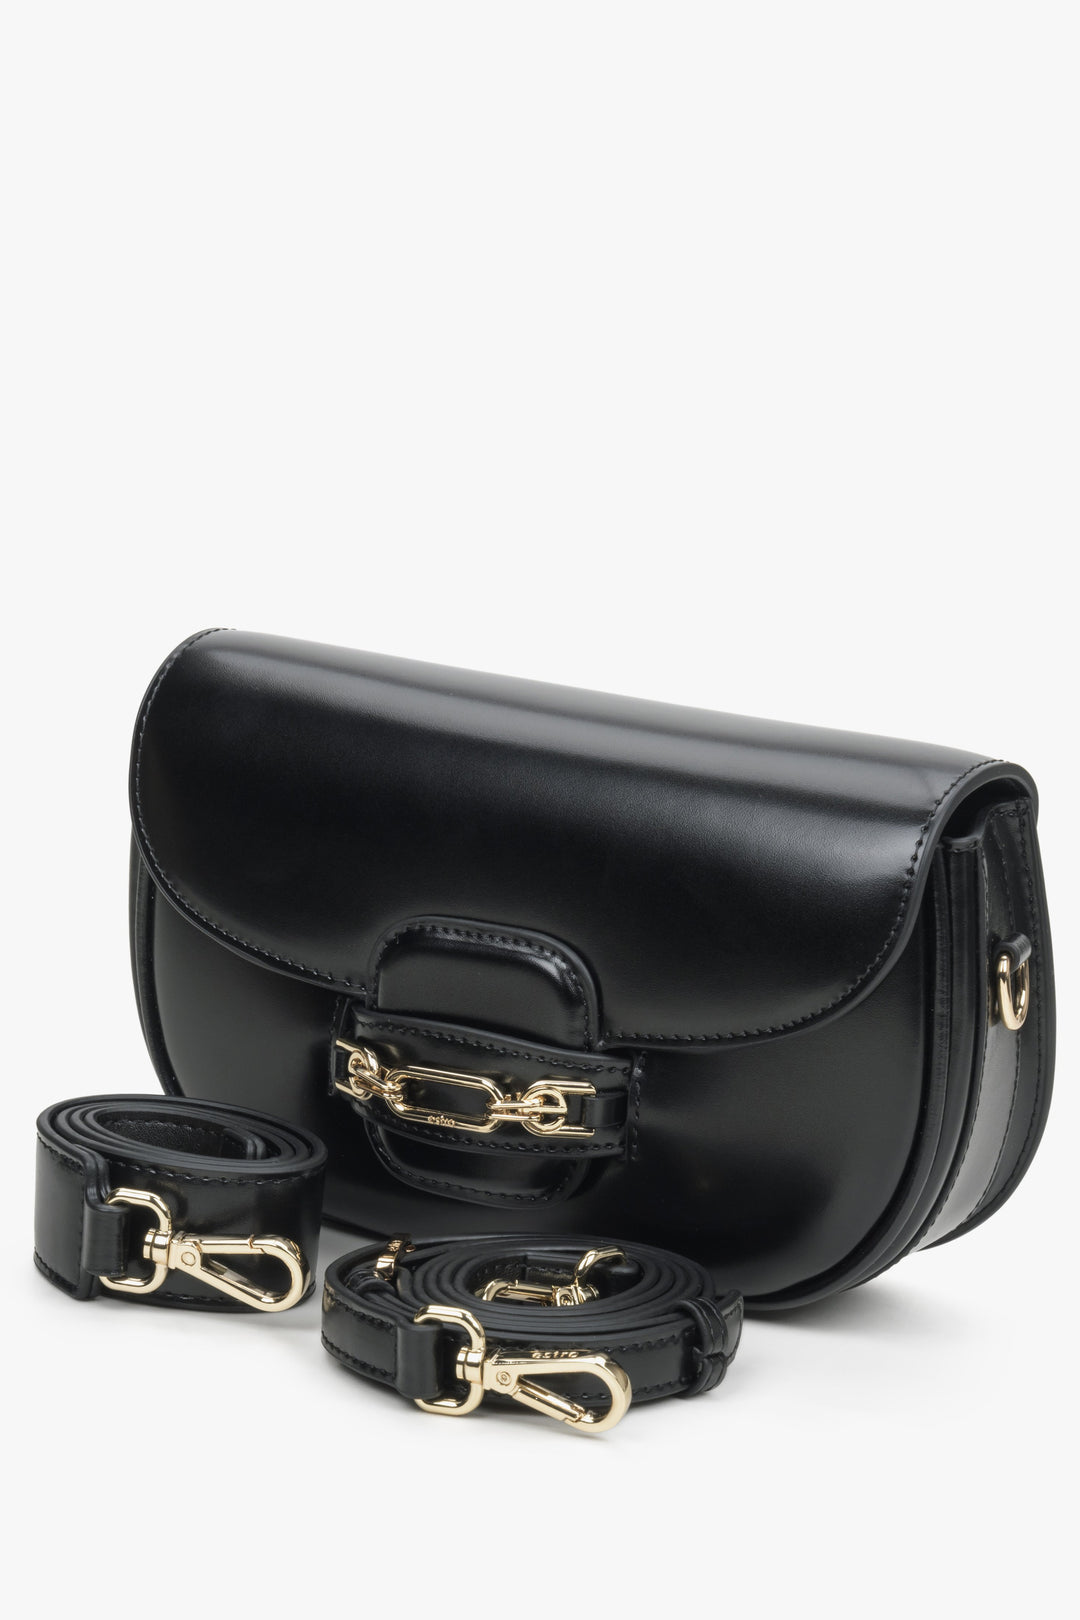 Estro women's black bag with adjustable strap.